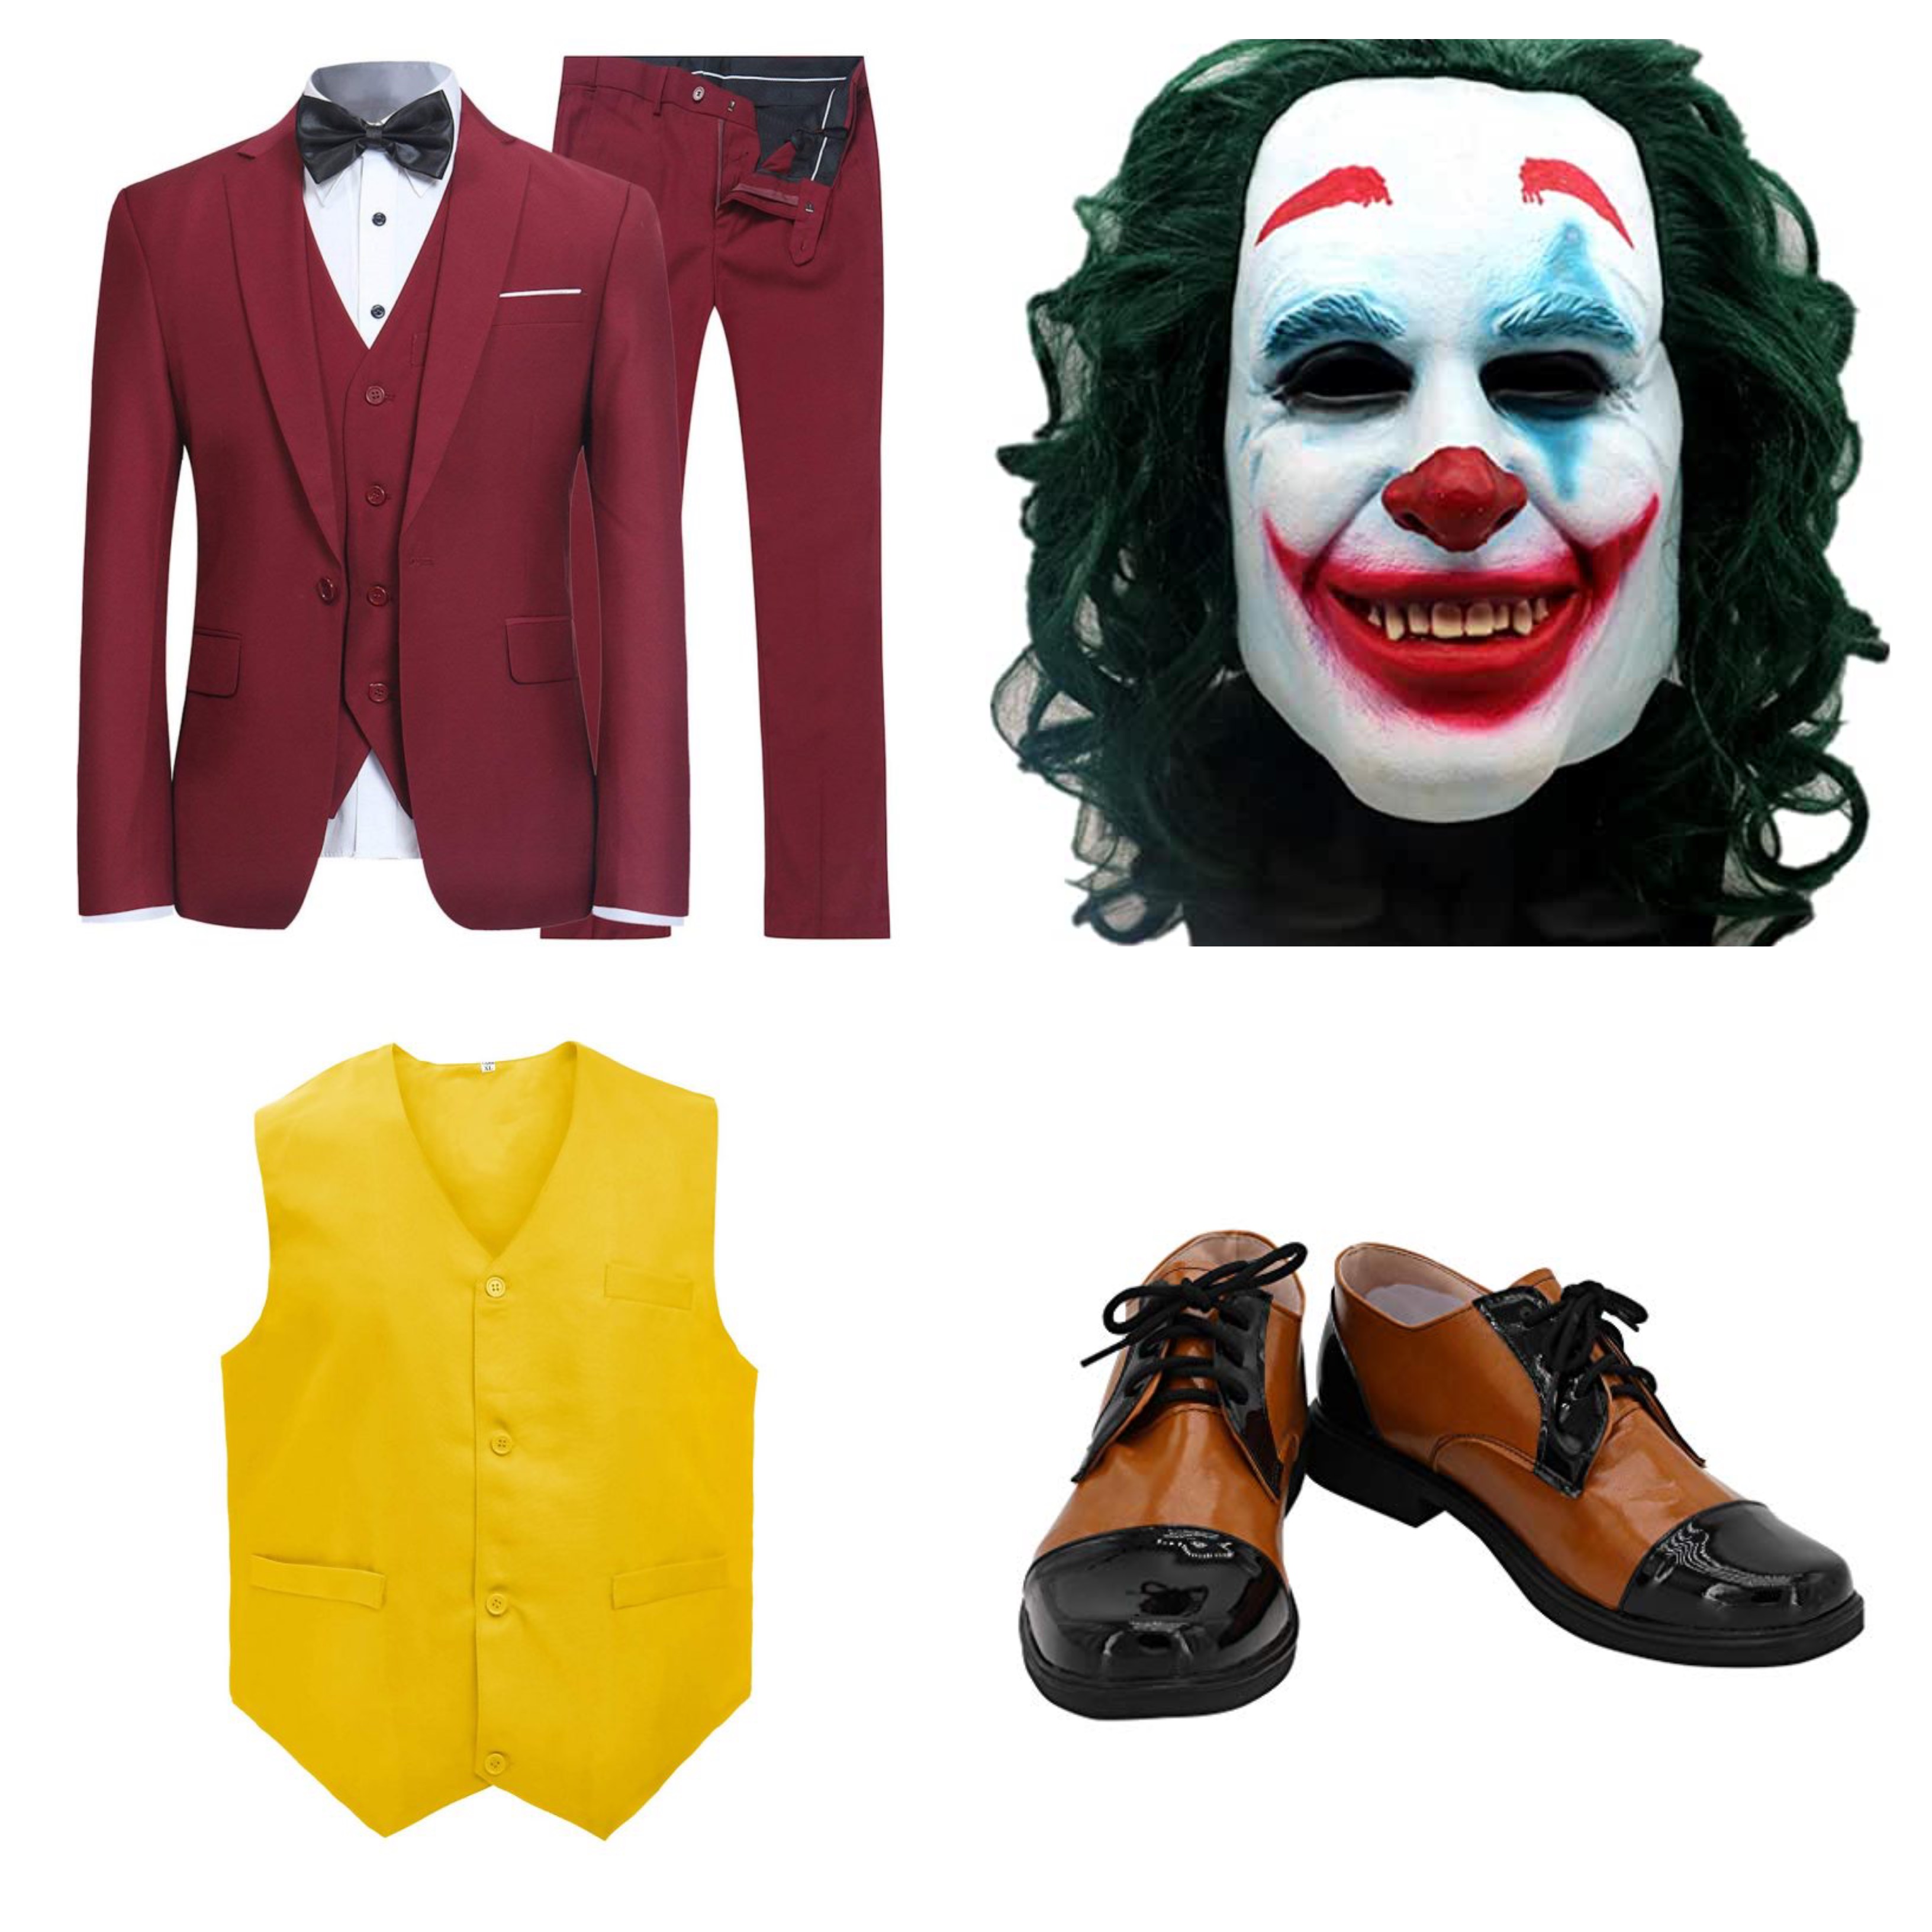 Các trang phụ hoá trang Halloween nhân vật Joker